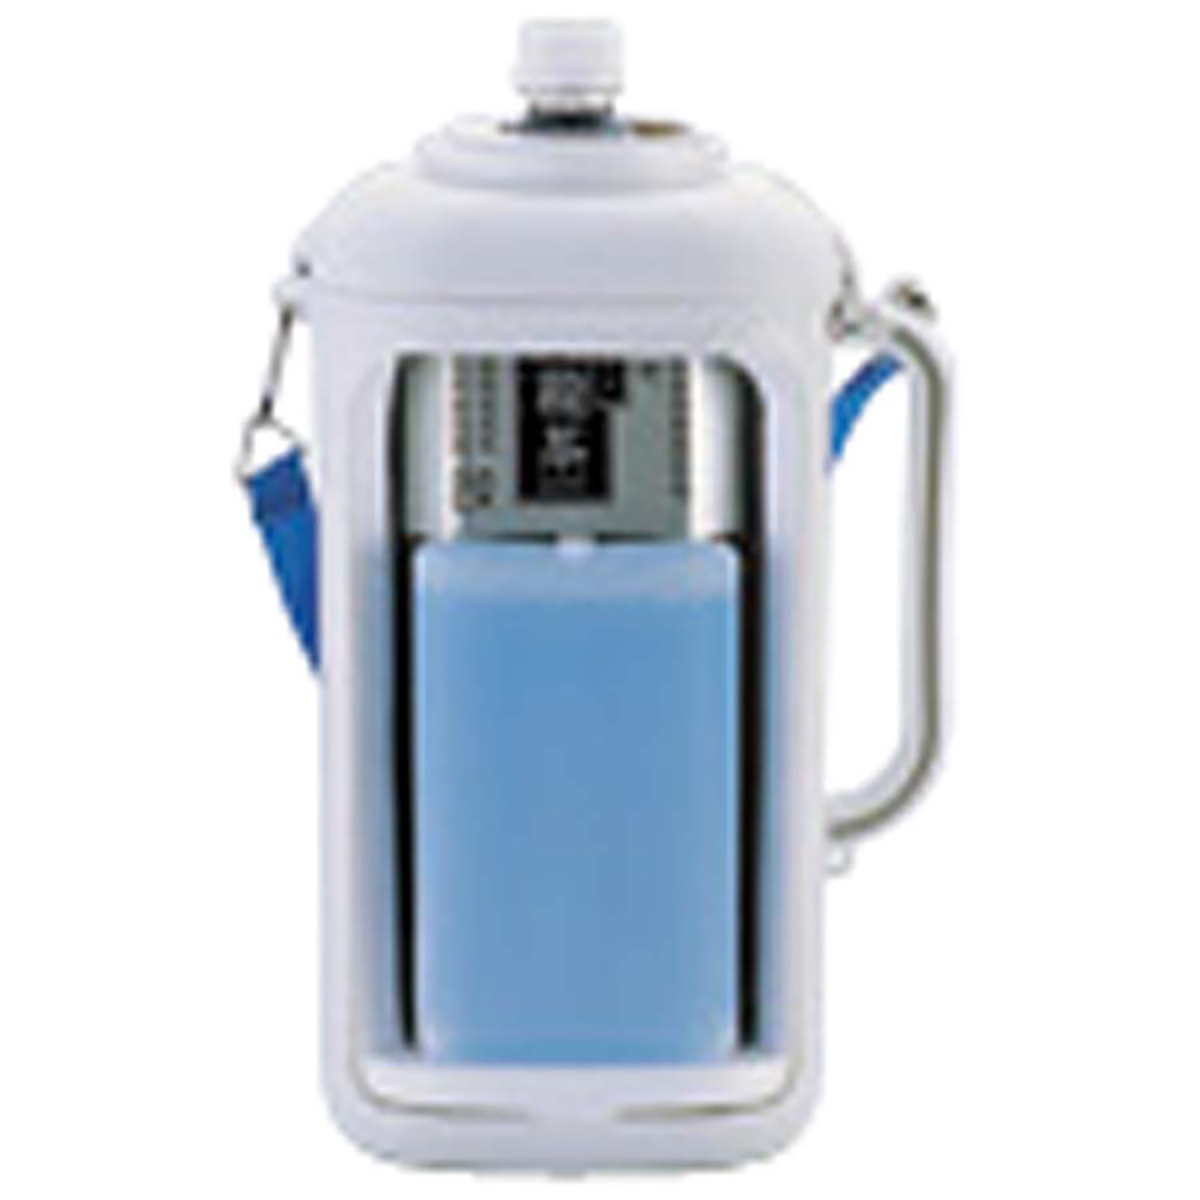 抗菌ペットボトル用クーラー〈保冷剤付〉2.0L(ホワイト×ブルー)(市販品